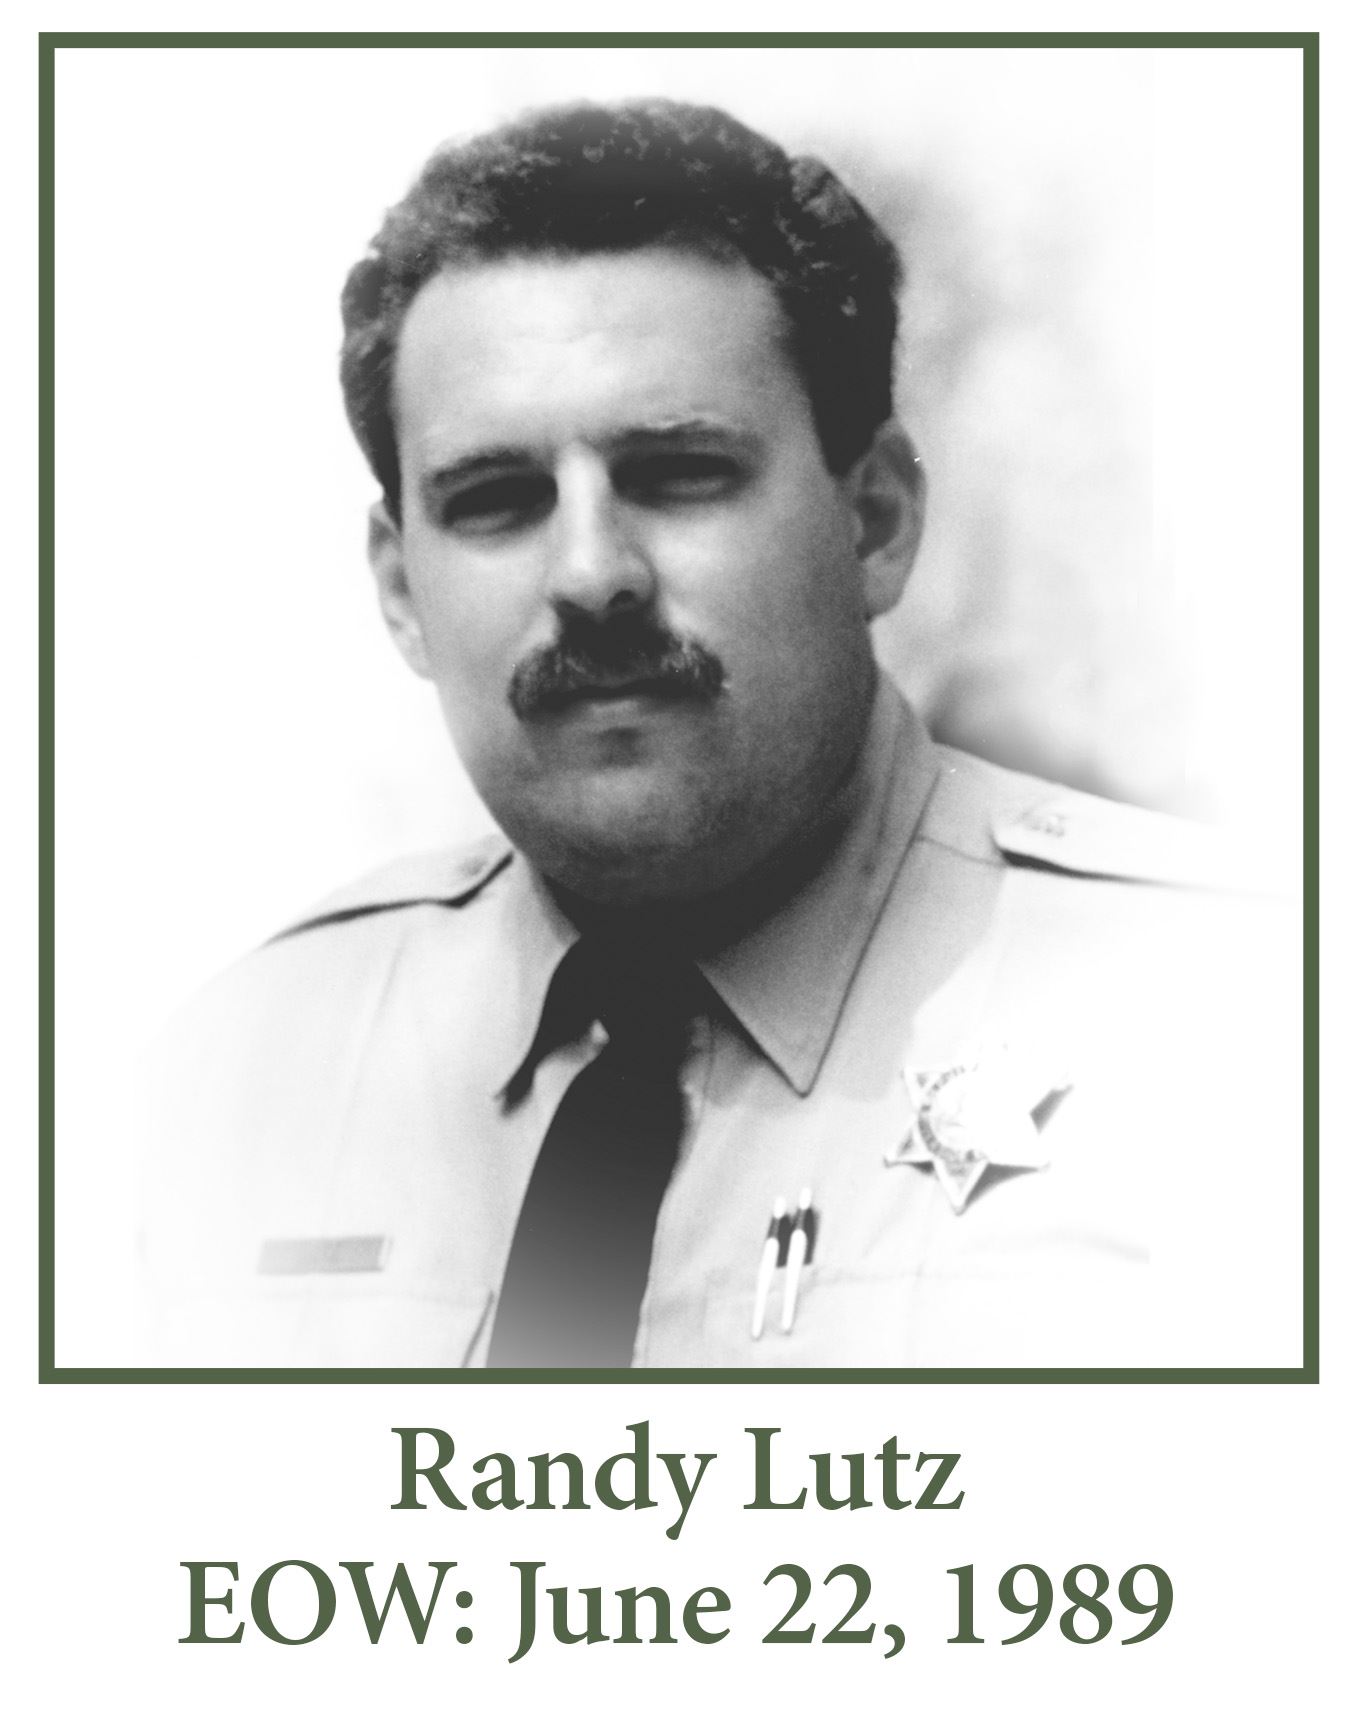 Randy Lutz EOW June 22 1989